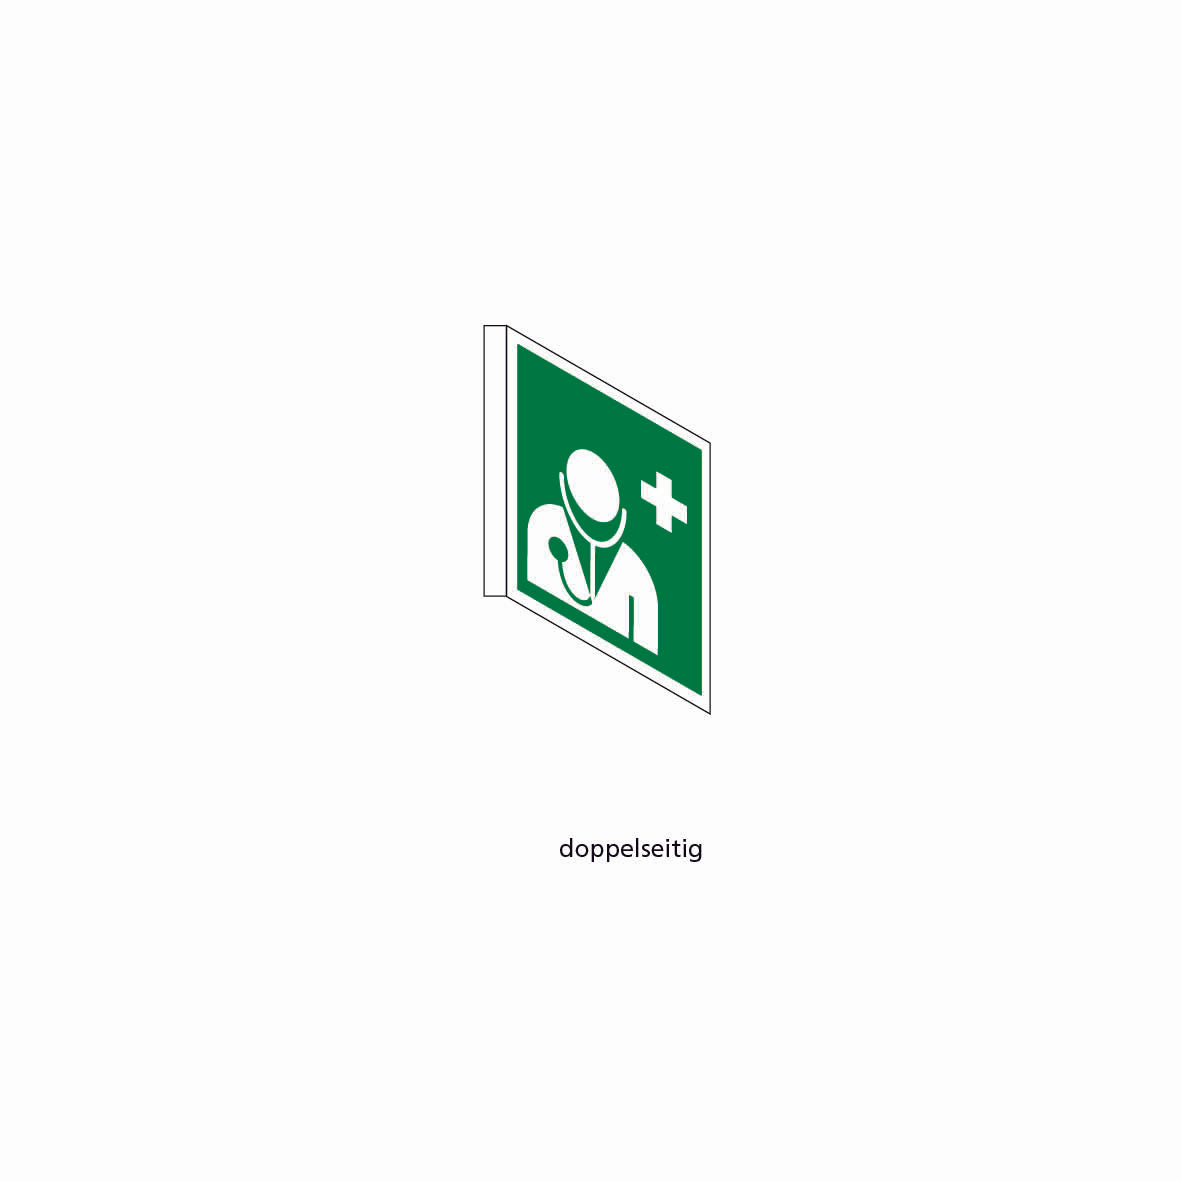 Fahnenschild doppelseitig, Rettungs- und Brandschutzzeichen, KU, 150 x 150 mm, gemäss Logobibliothek